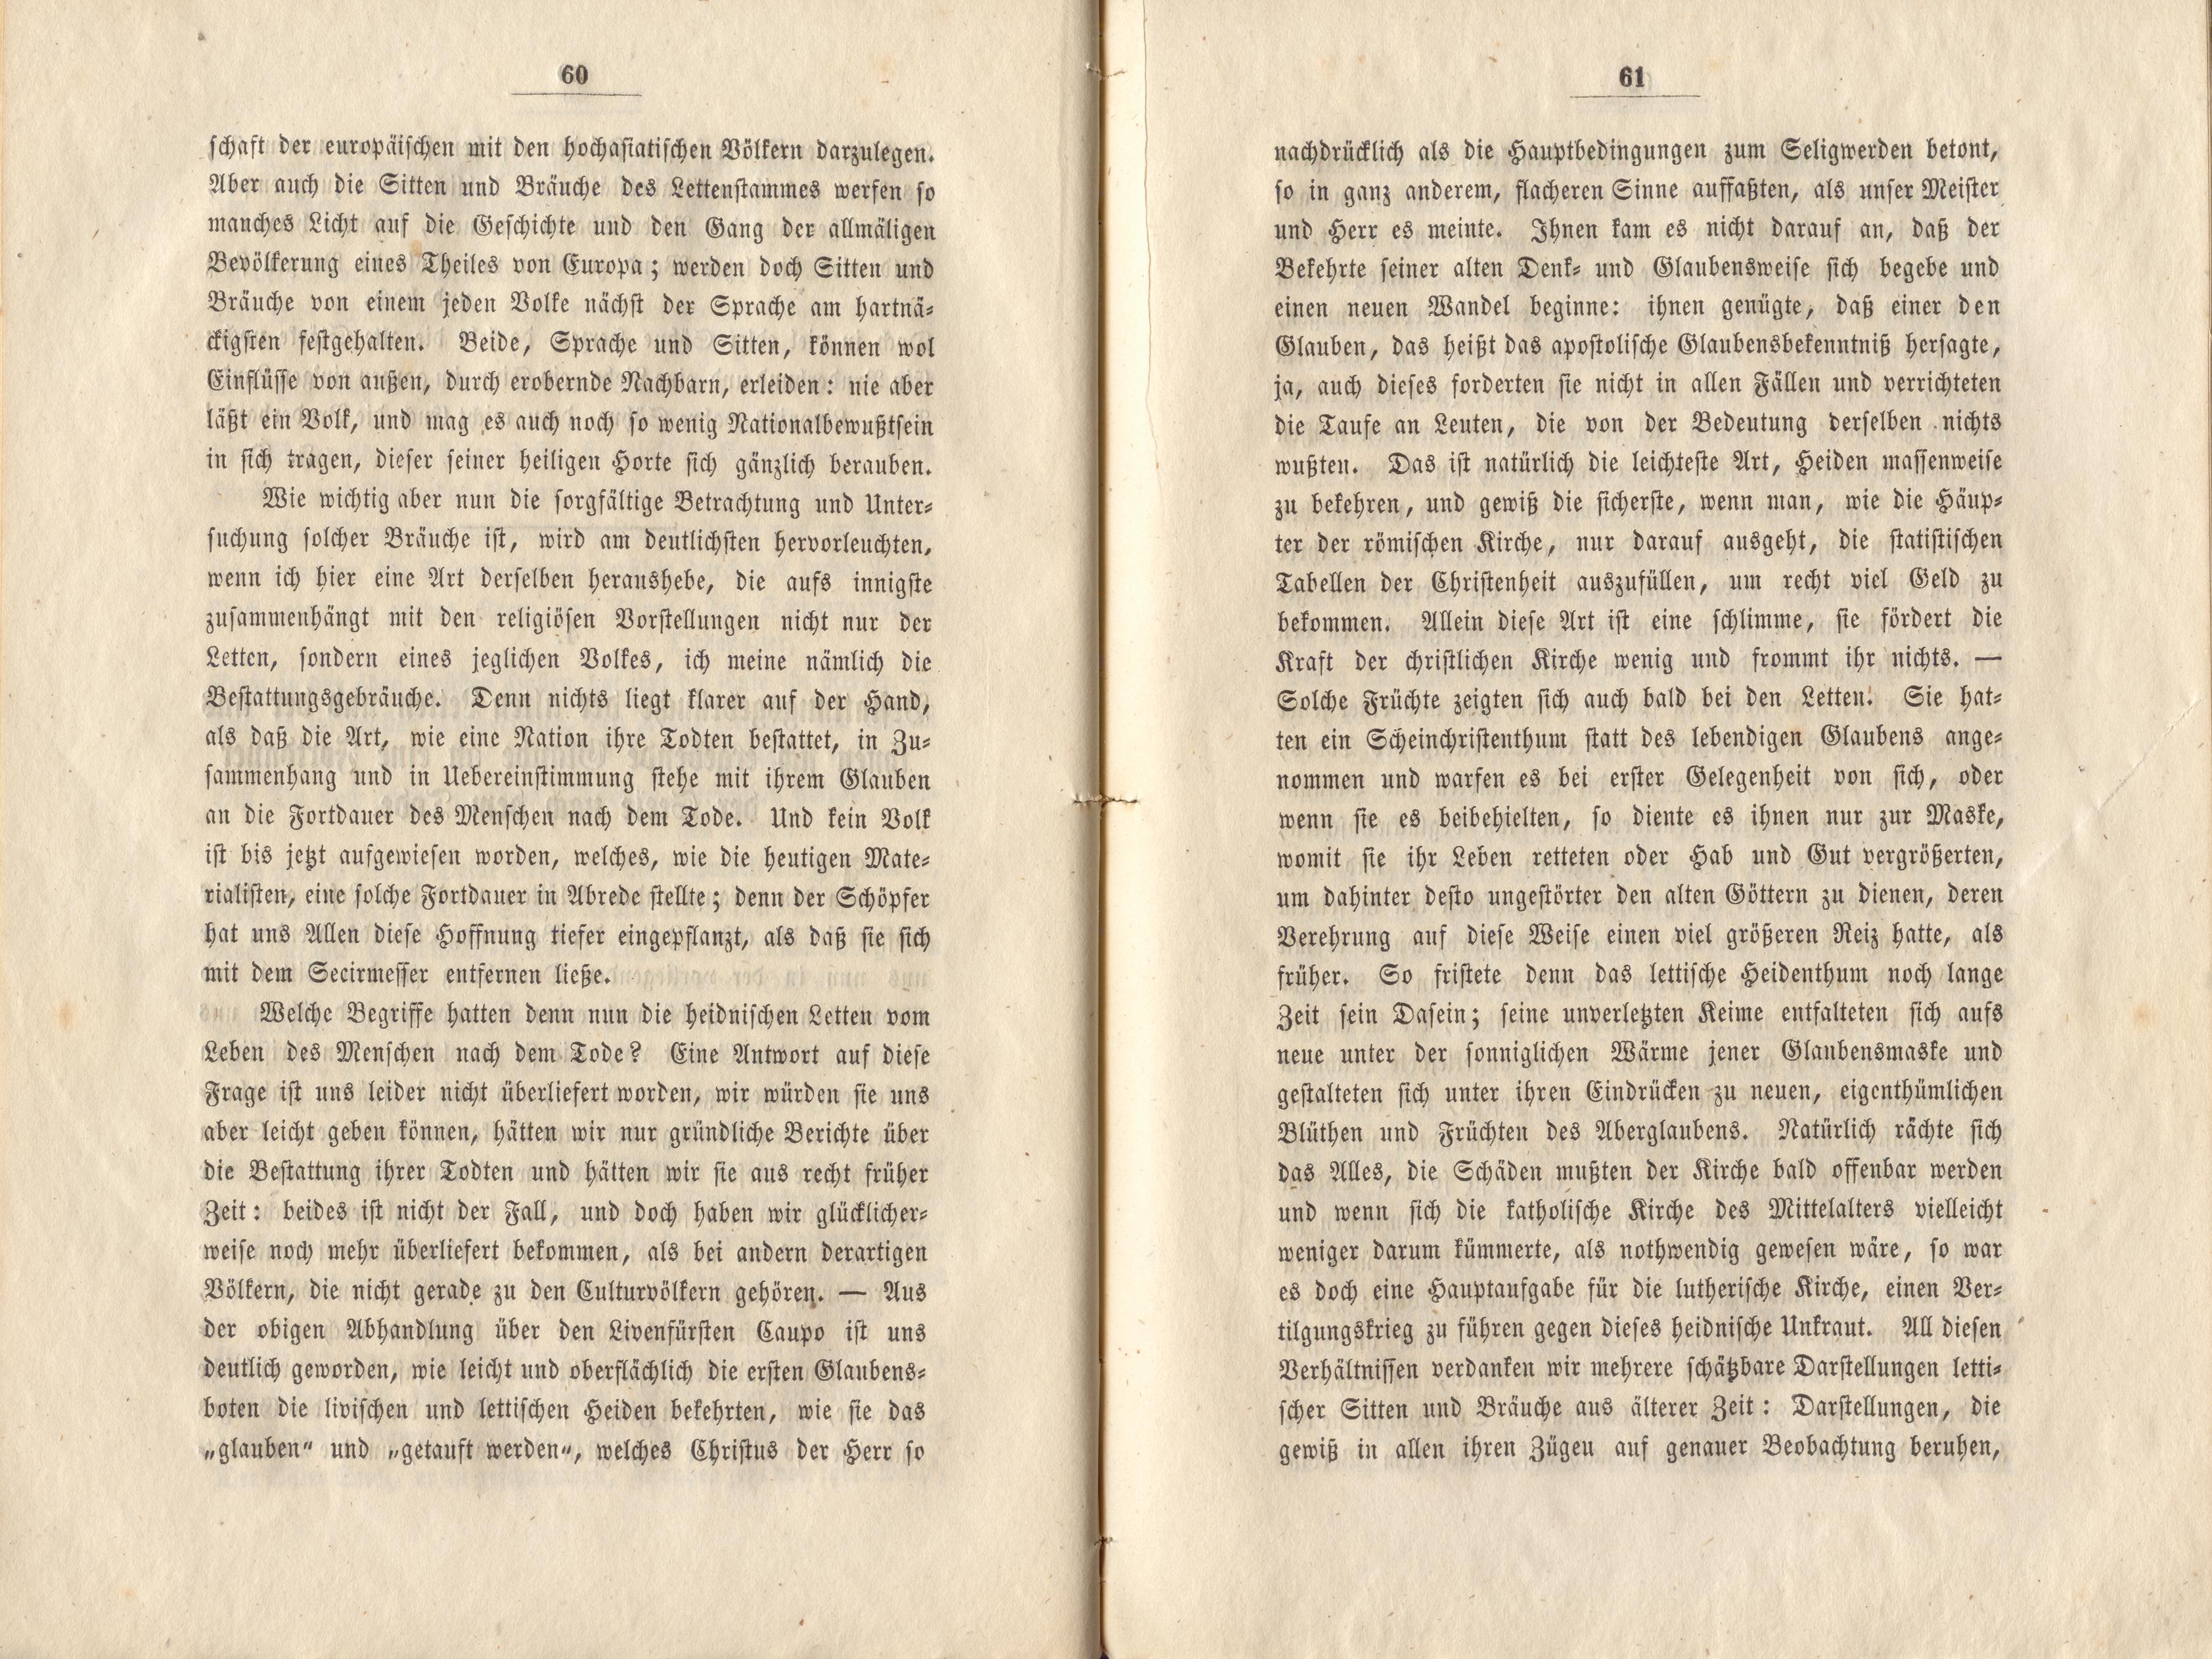 Felliner Blätter (1859) | 31. (60-61) Main body of text